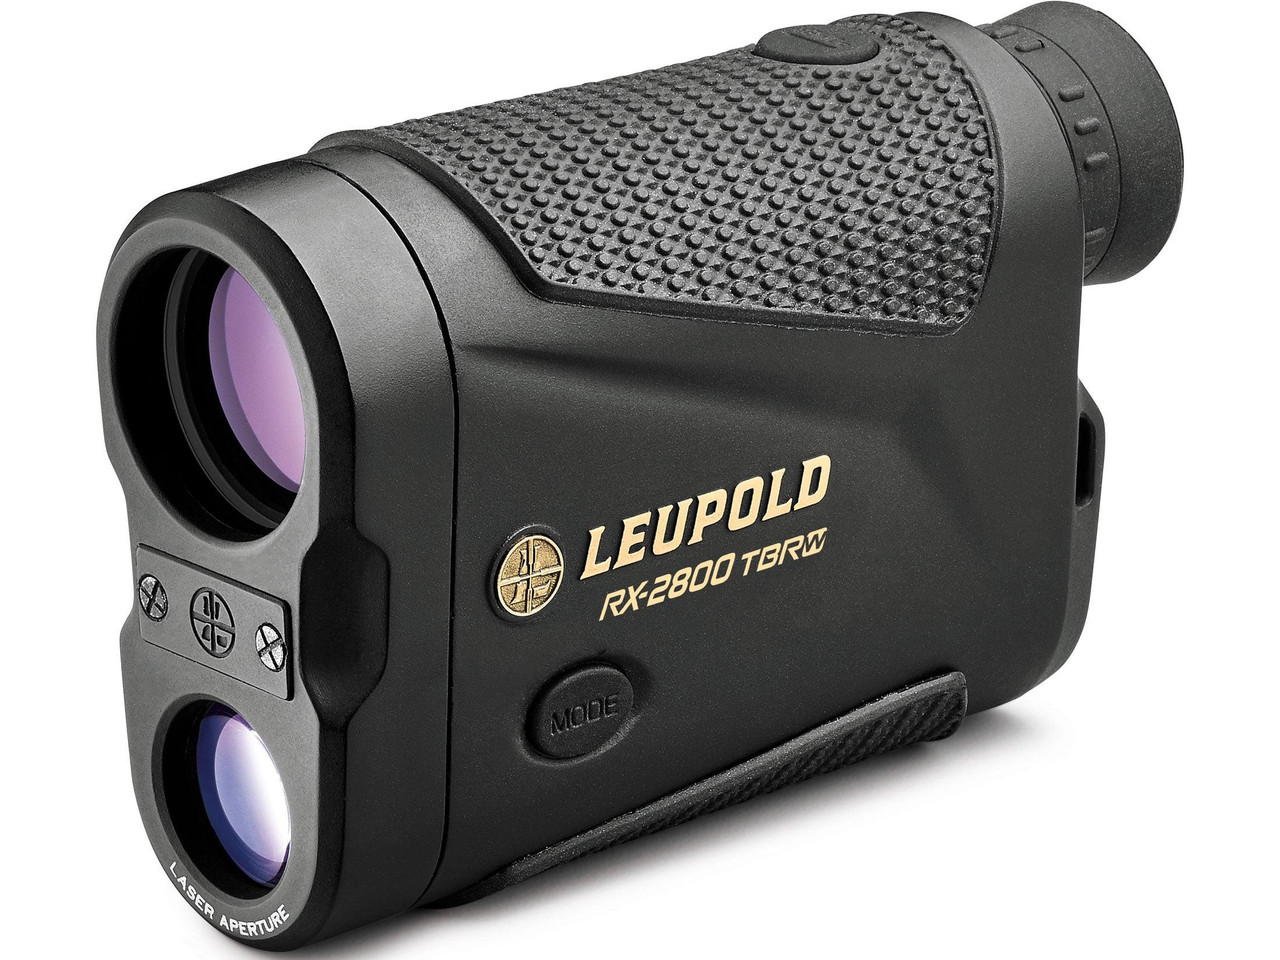 Leupold RX-2800 TBR/W with DNA Laser Rangefinder